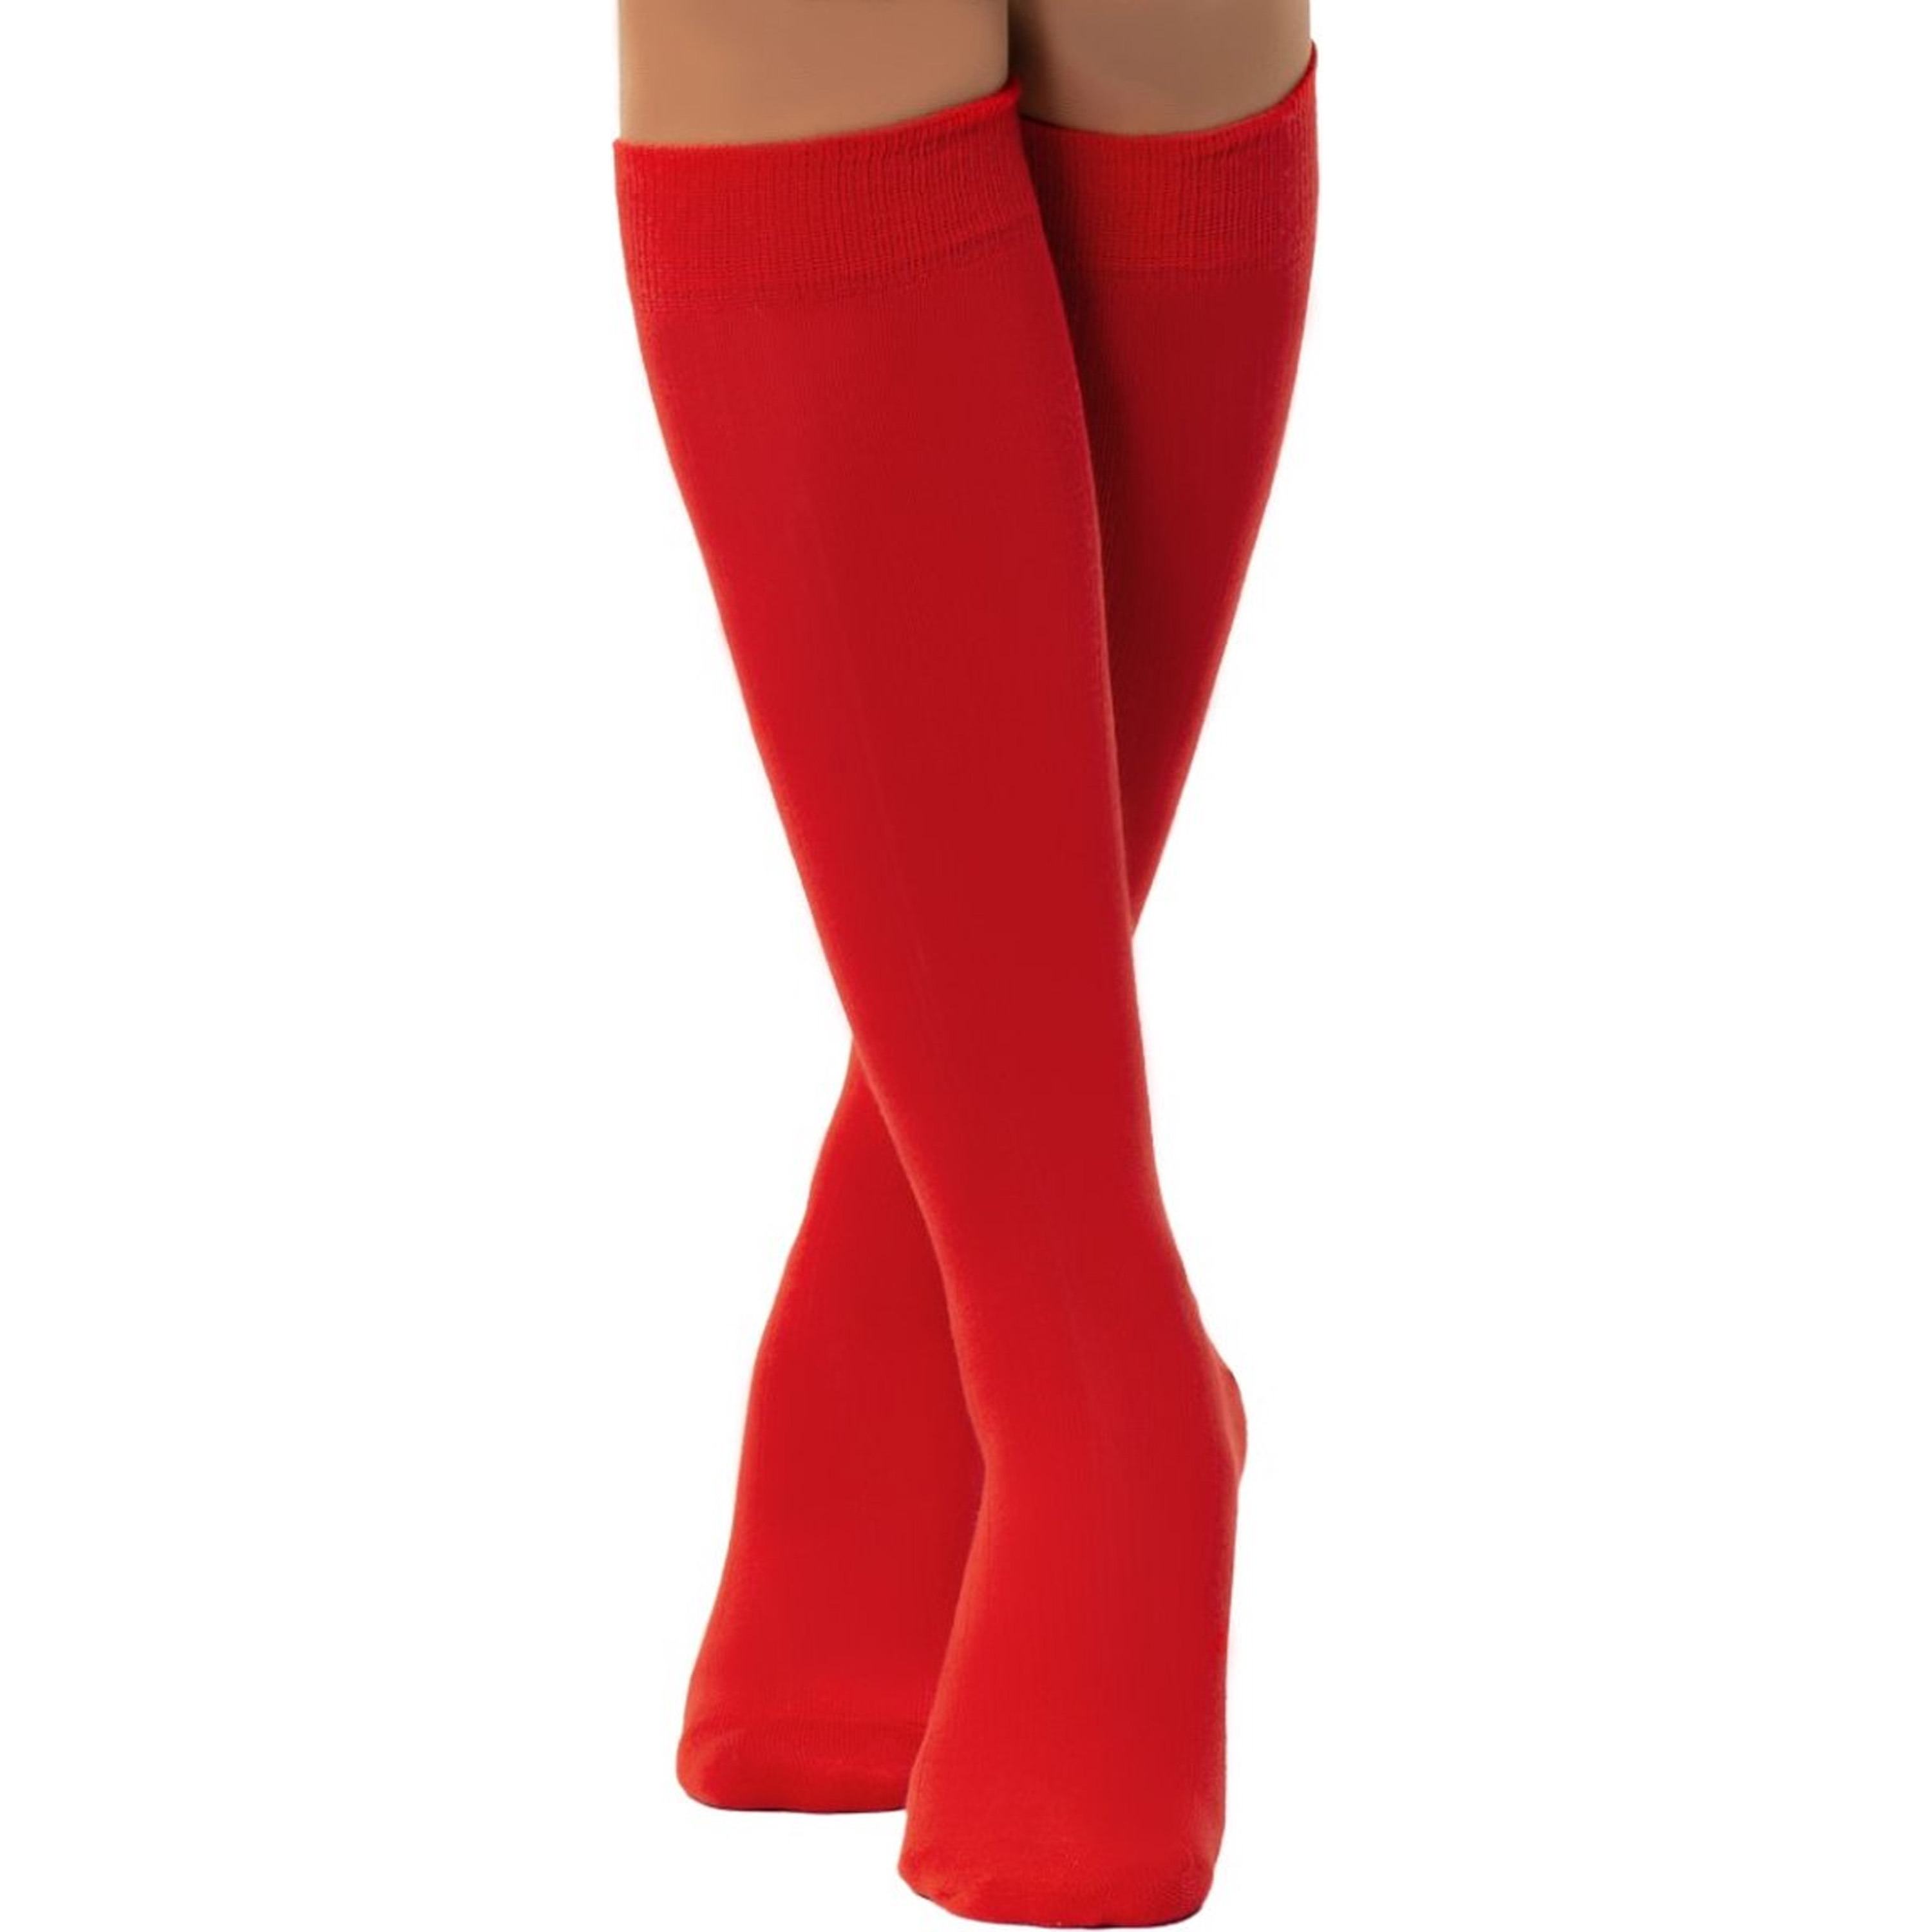 Verkleed kniesokken-kousen rood one size voor dames